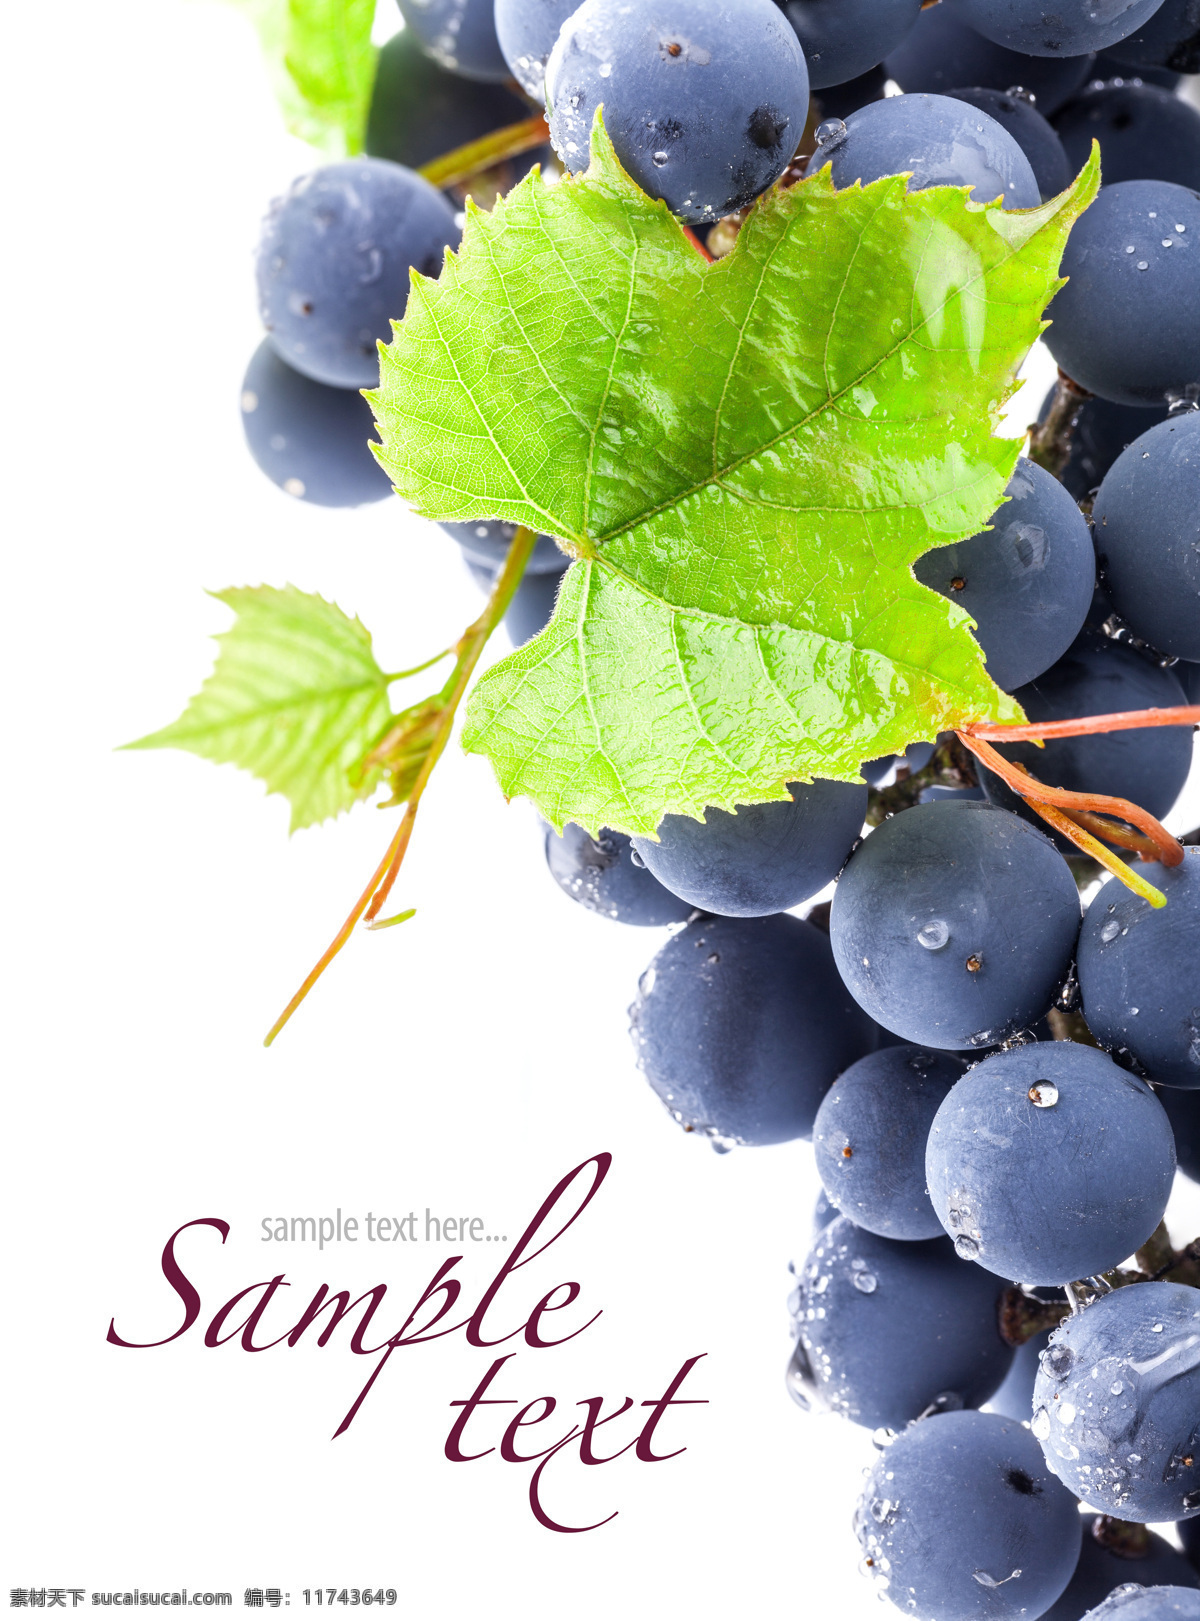 新鲜 水果 葡萄 新鲜水果 新鲜葡萄 红酒 葡萄叶 水果图片 餐饮美食